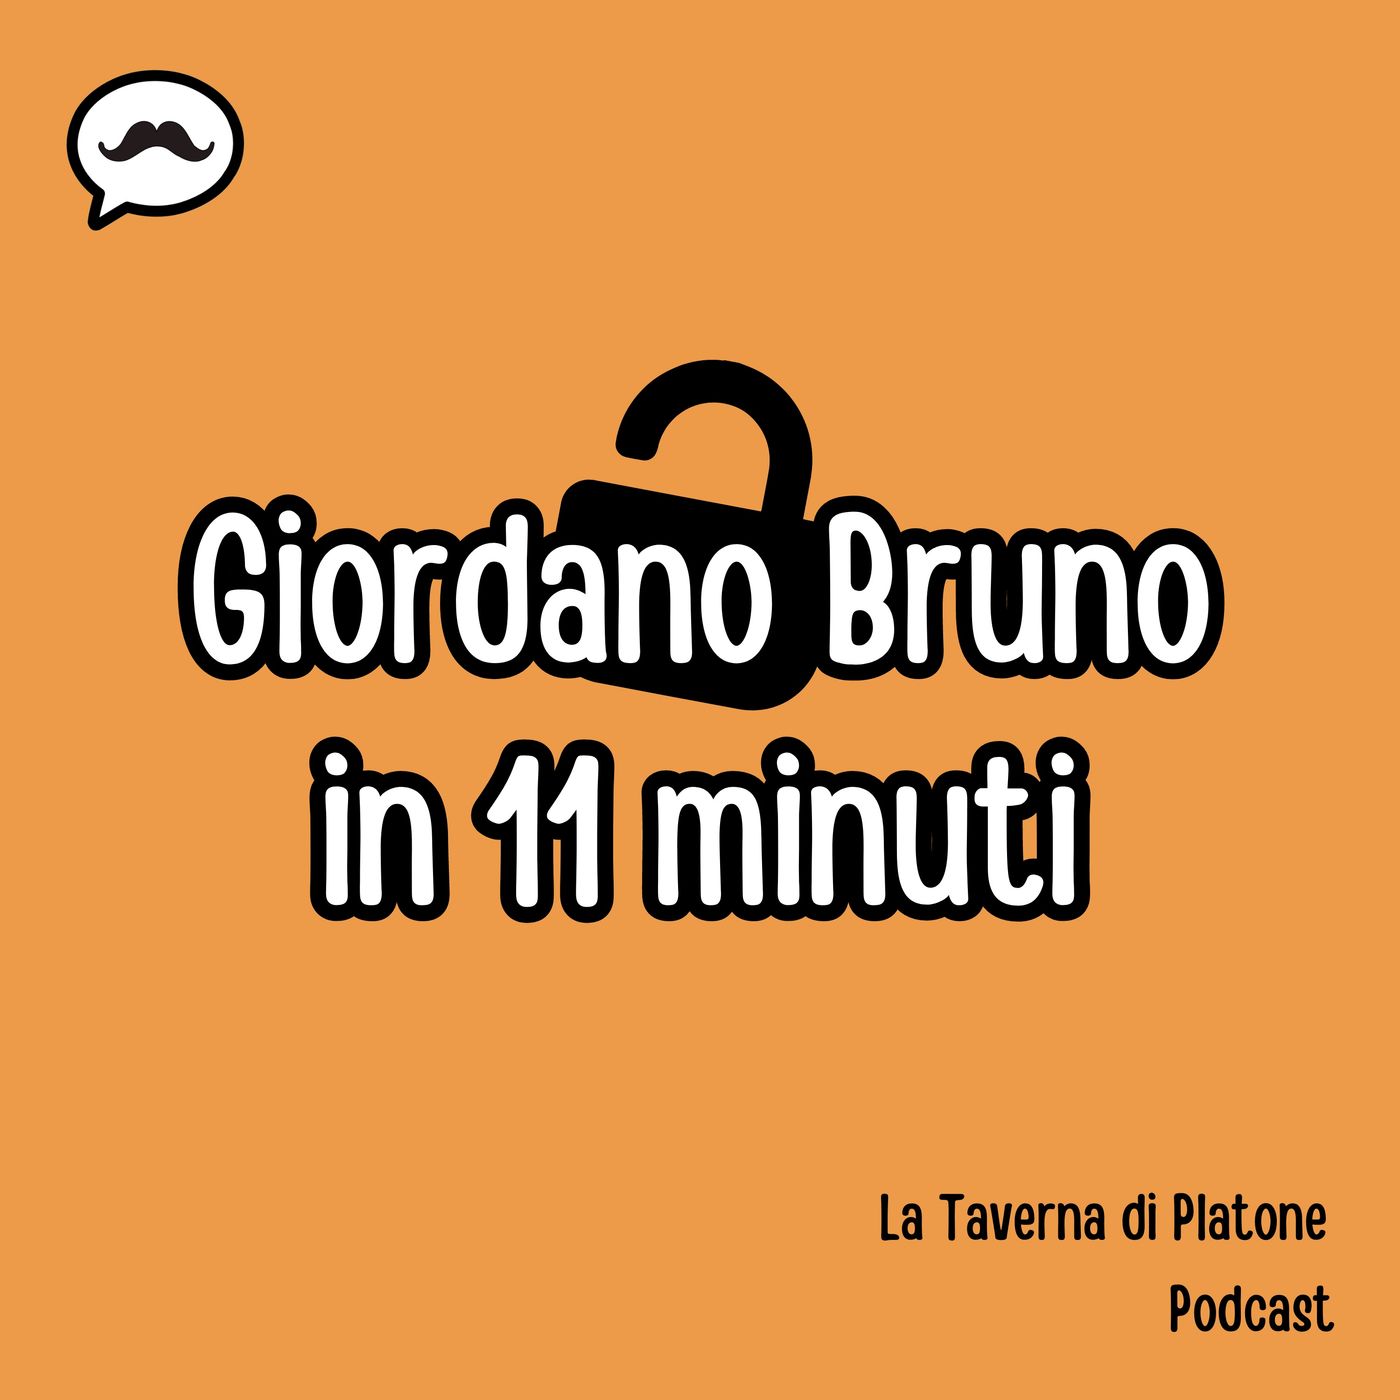 Giordano Bruno in 11 minuti